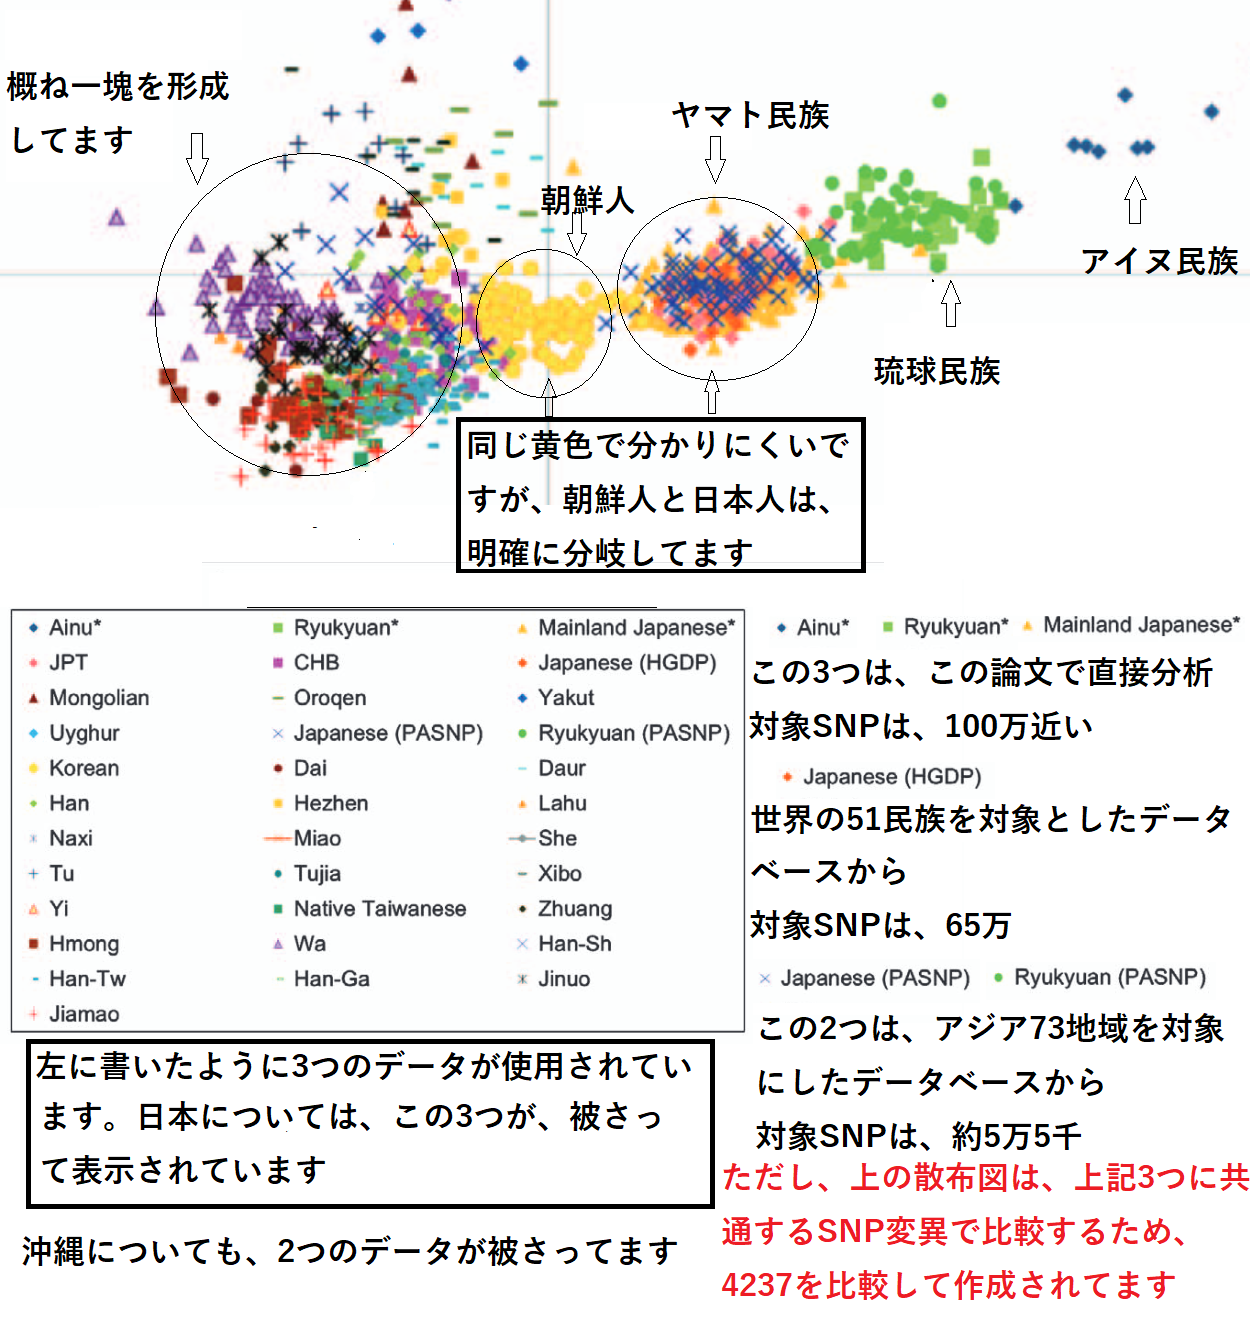 朝鮮人が日本人や他のアジア人と明確に異なることを示すDNA解析図